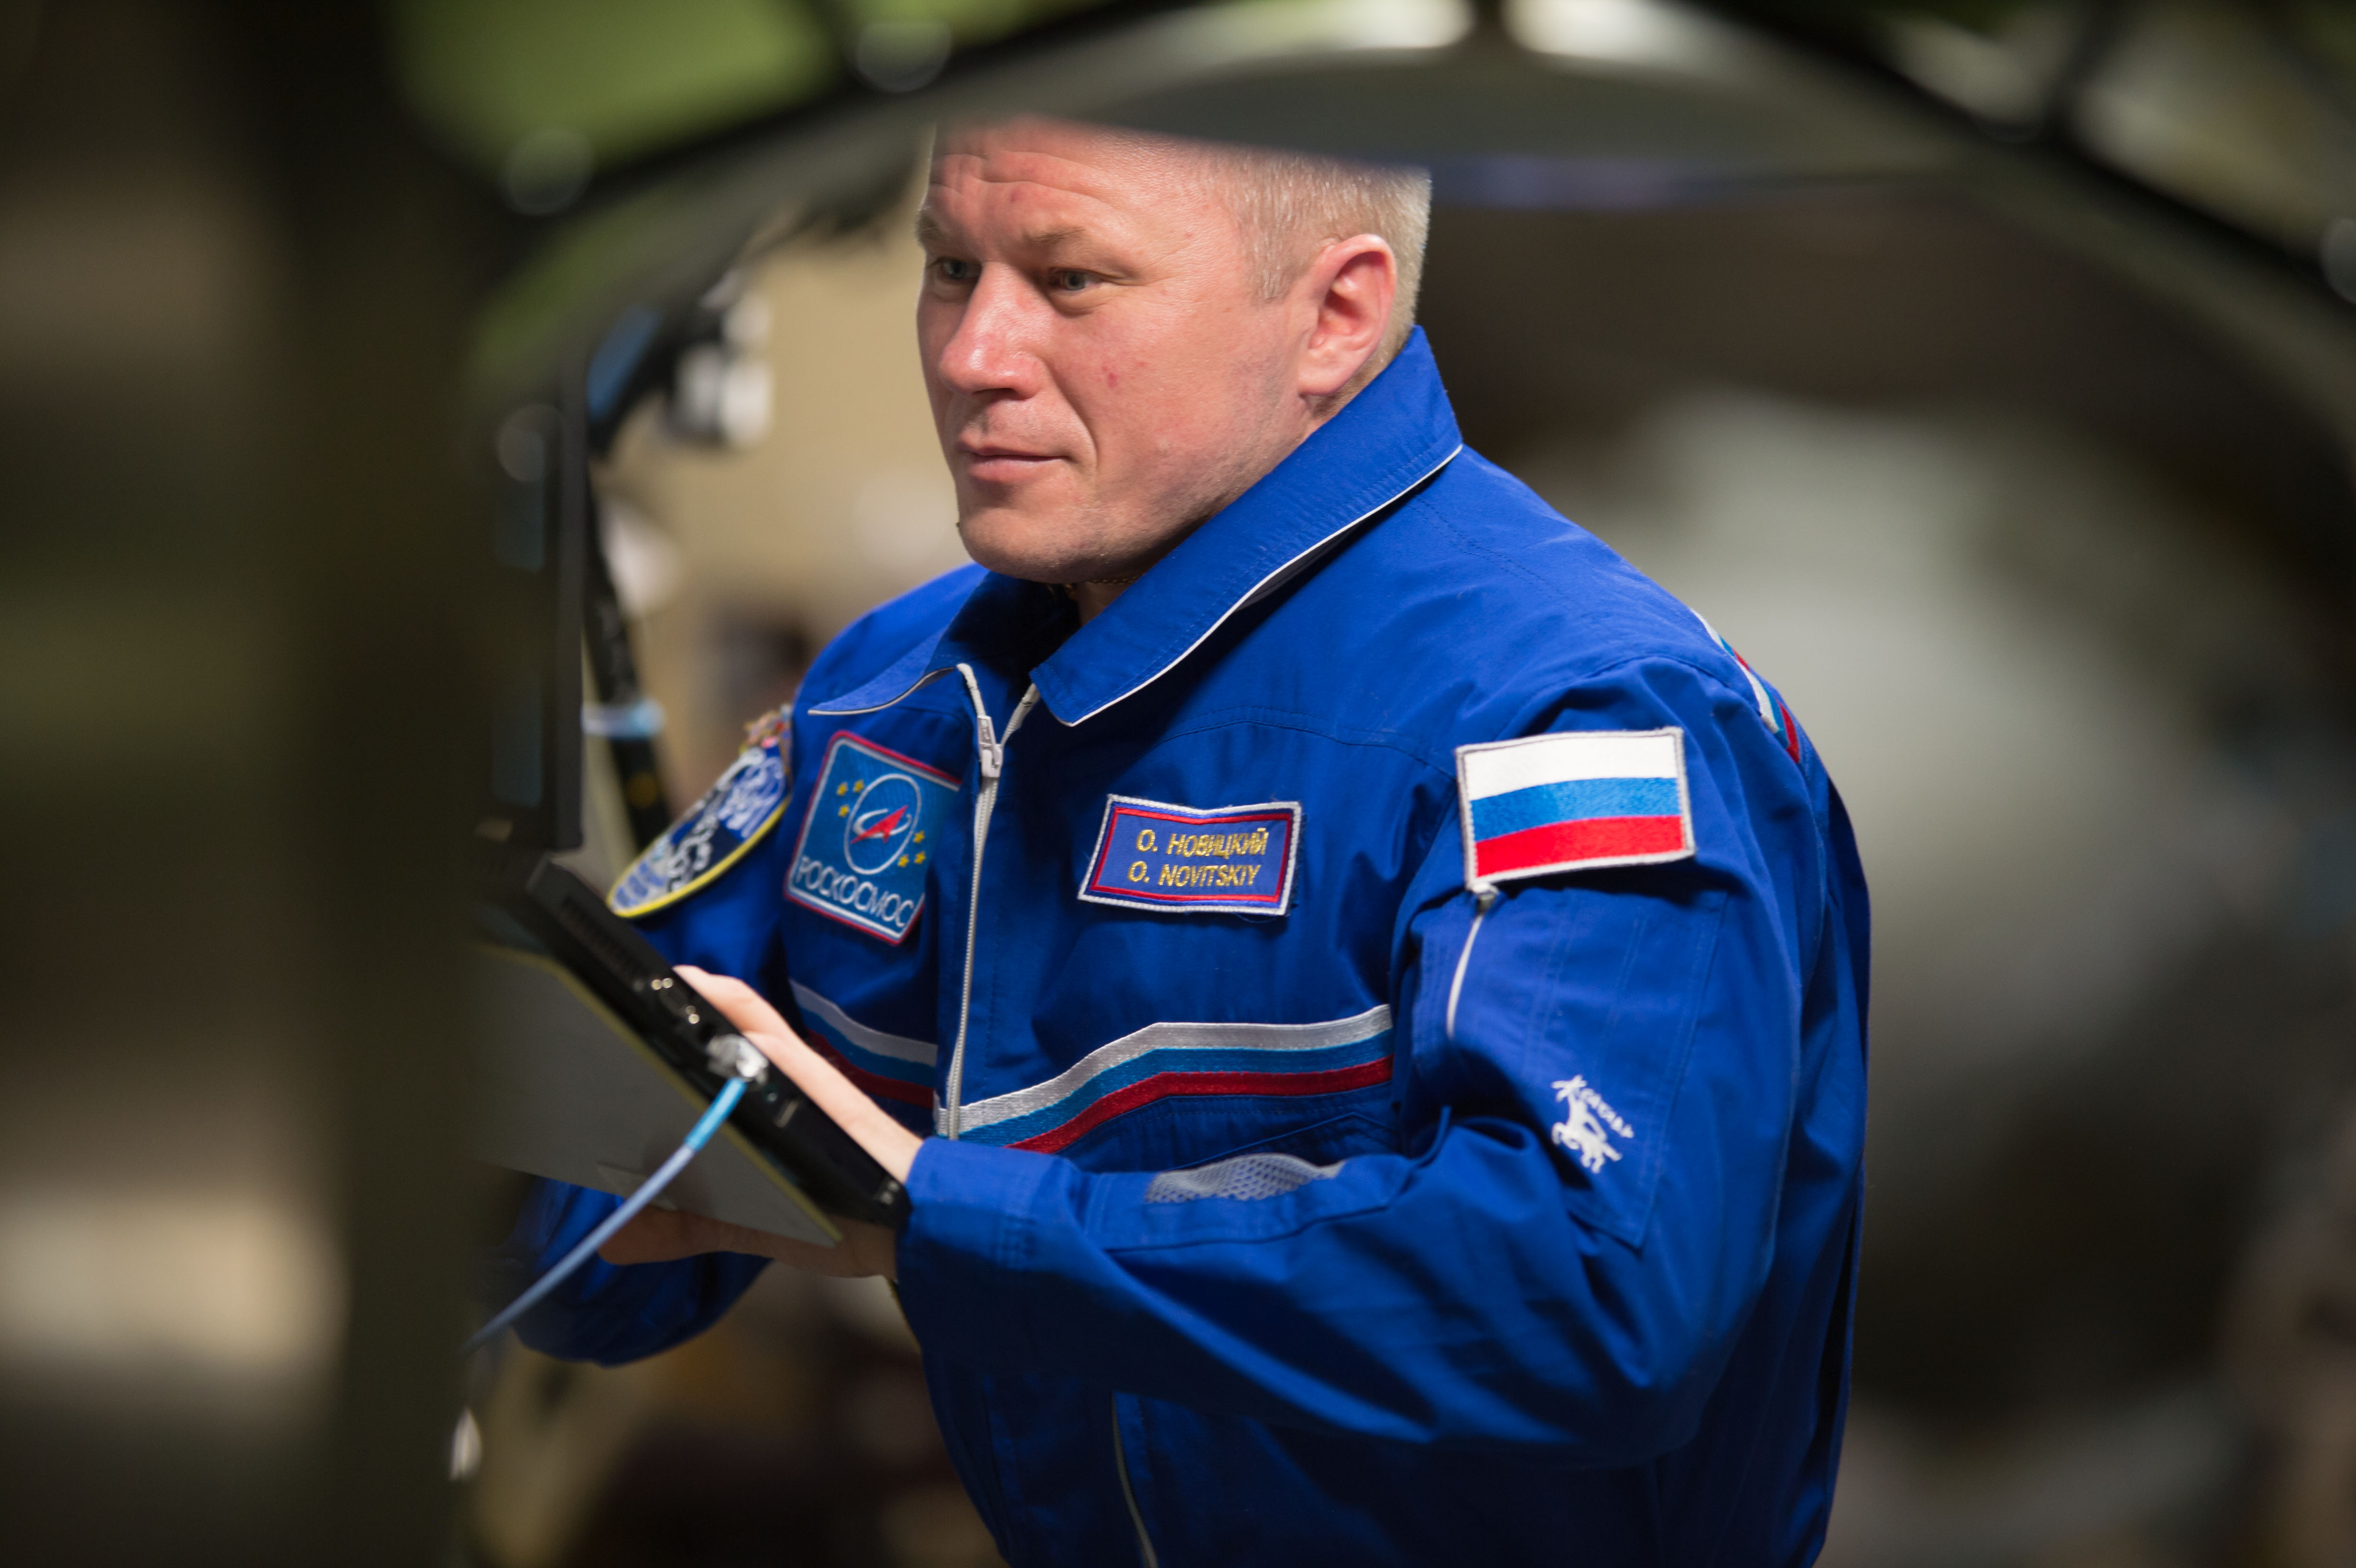 ISS-50 Oleg Novitskiy wearing a flight suit aboard the ISS